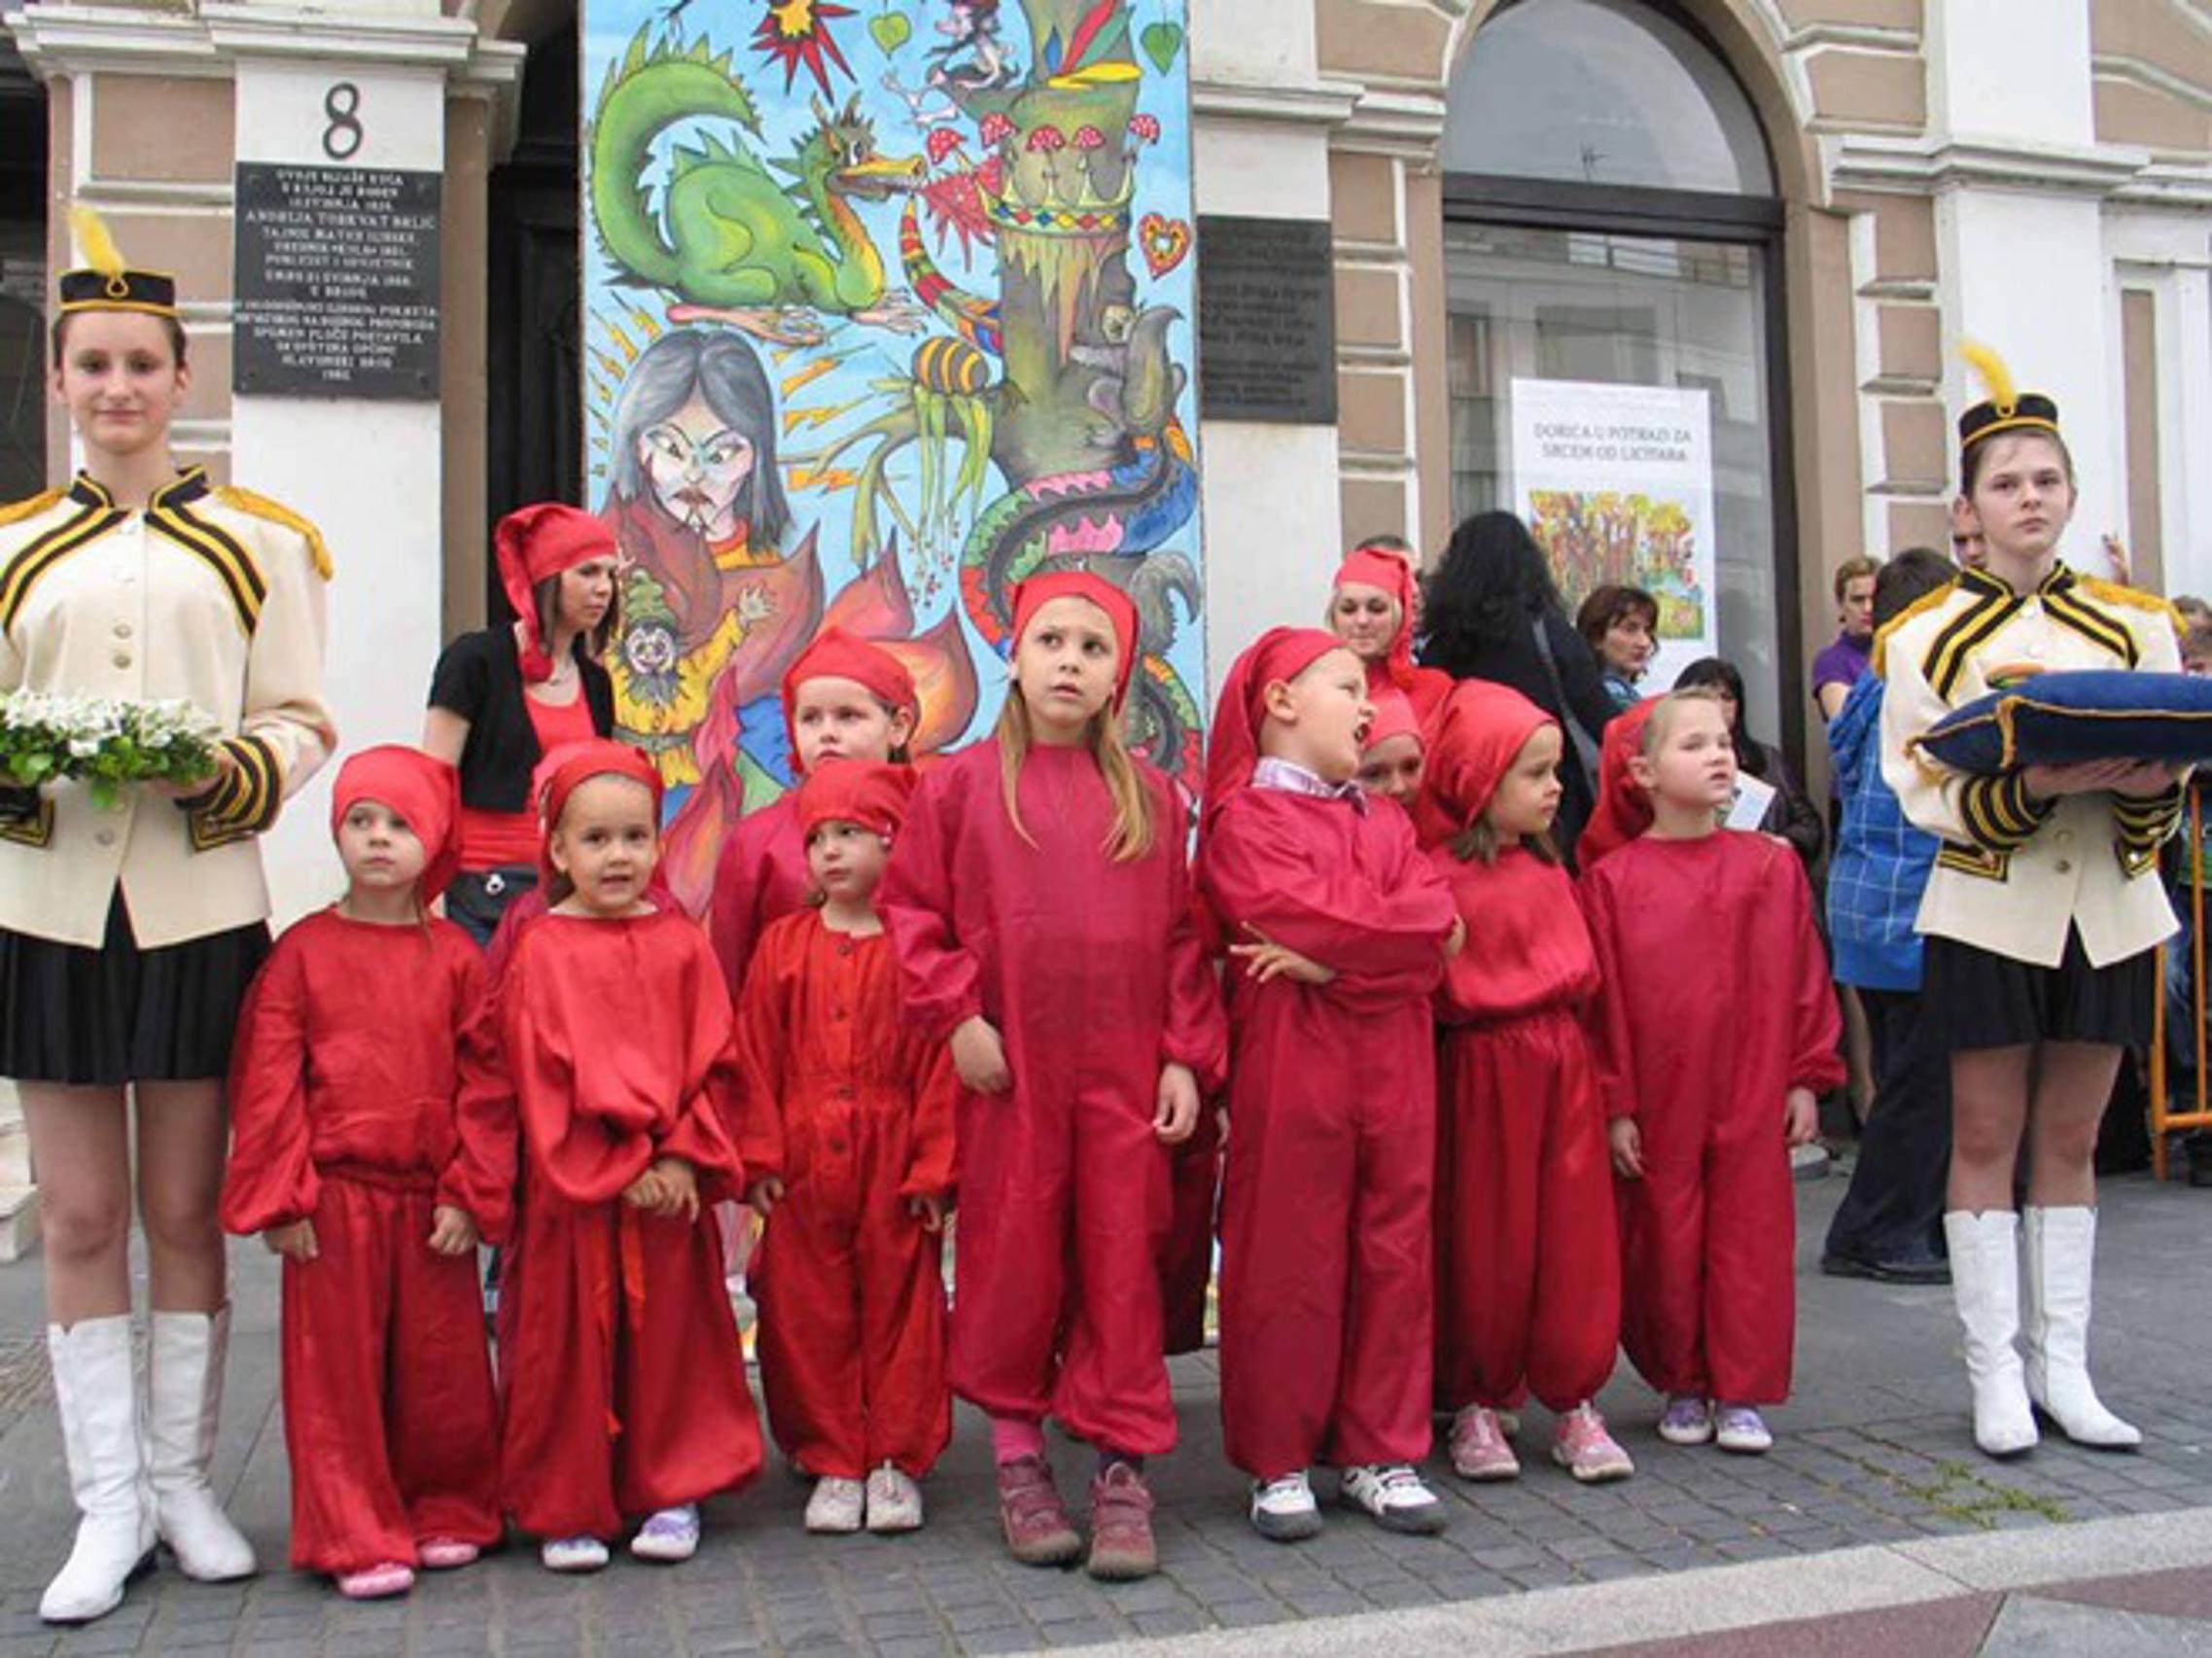 Titulu "Grad prijatelj djece" Slavonski Brod je zaslužio zbog brojnih programa za djecu